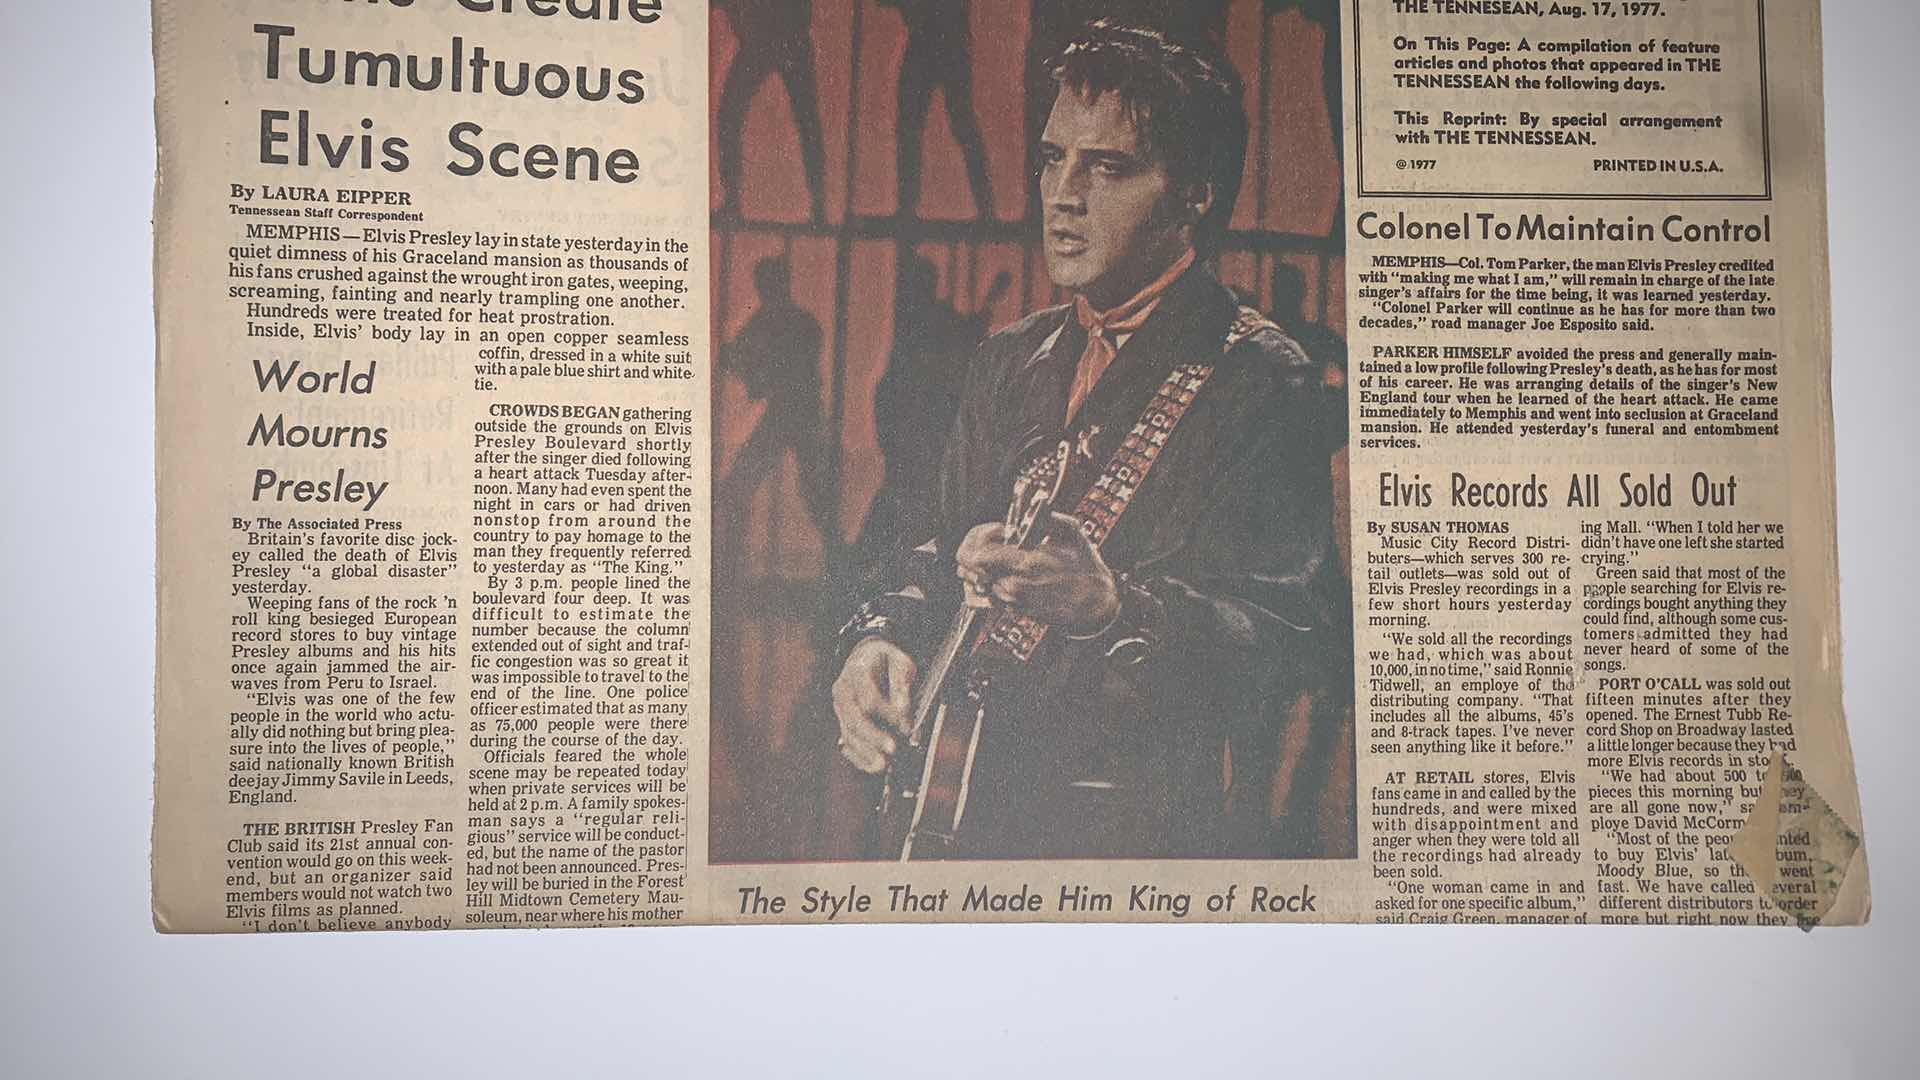 Photo 2 of AUGUST 19 1977 FANS CREATE TUMULTUOUS ELVIS SCENE NEWSPAPER